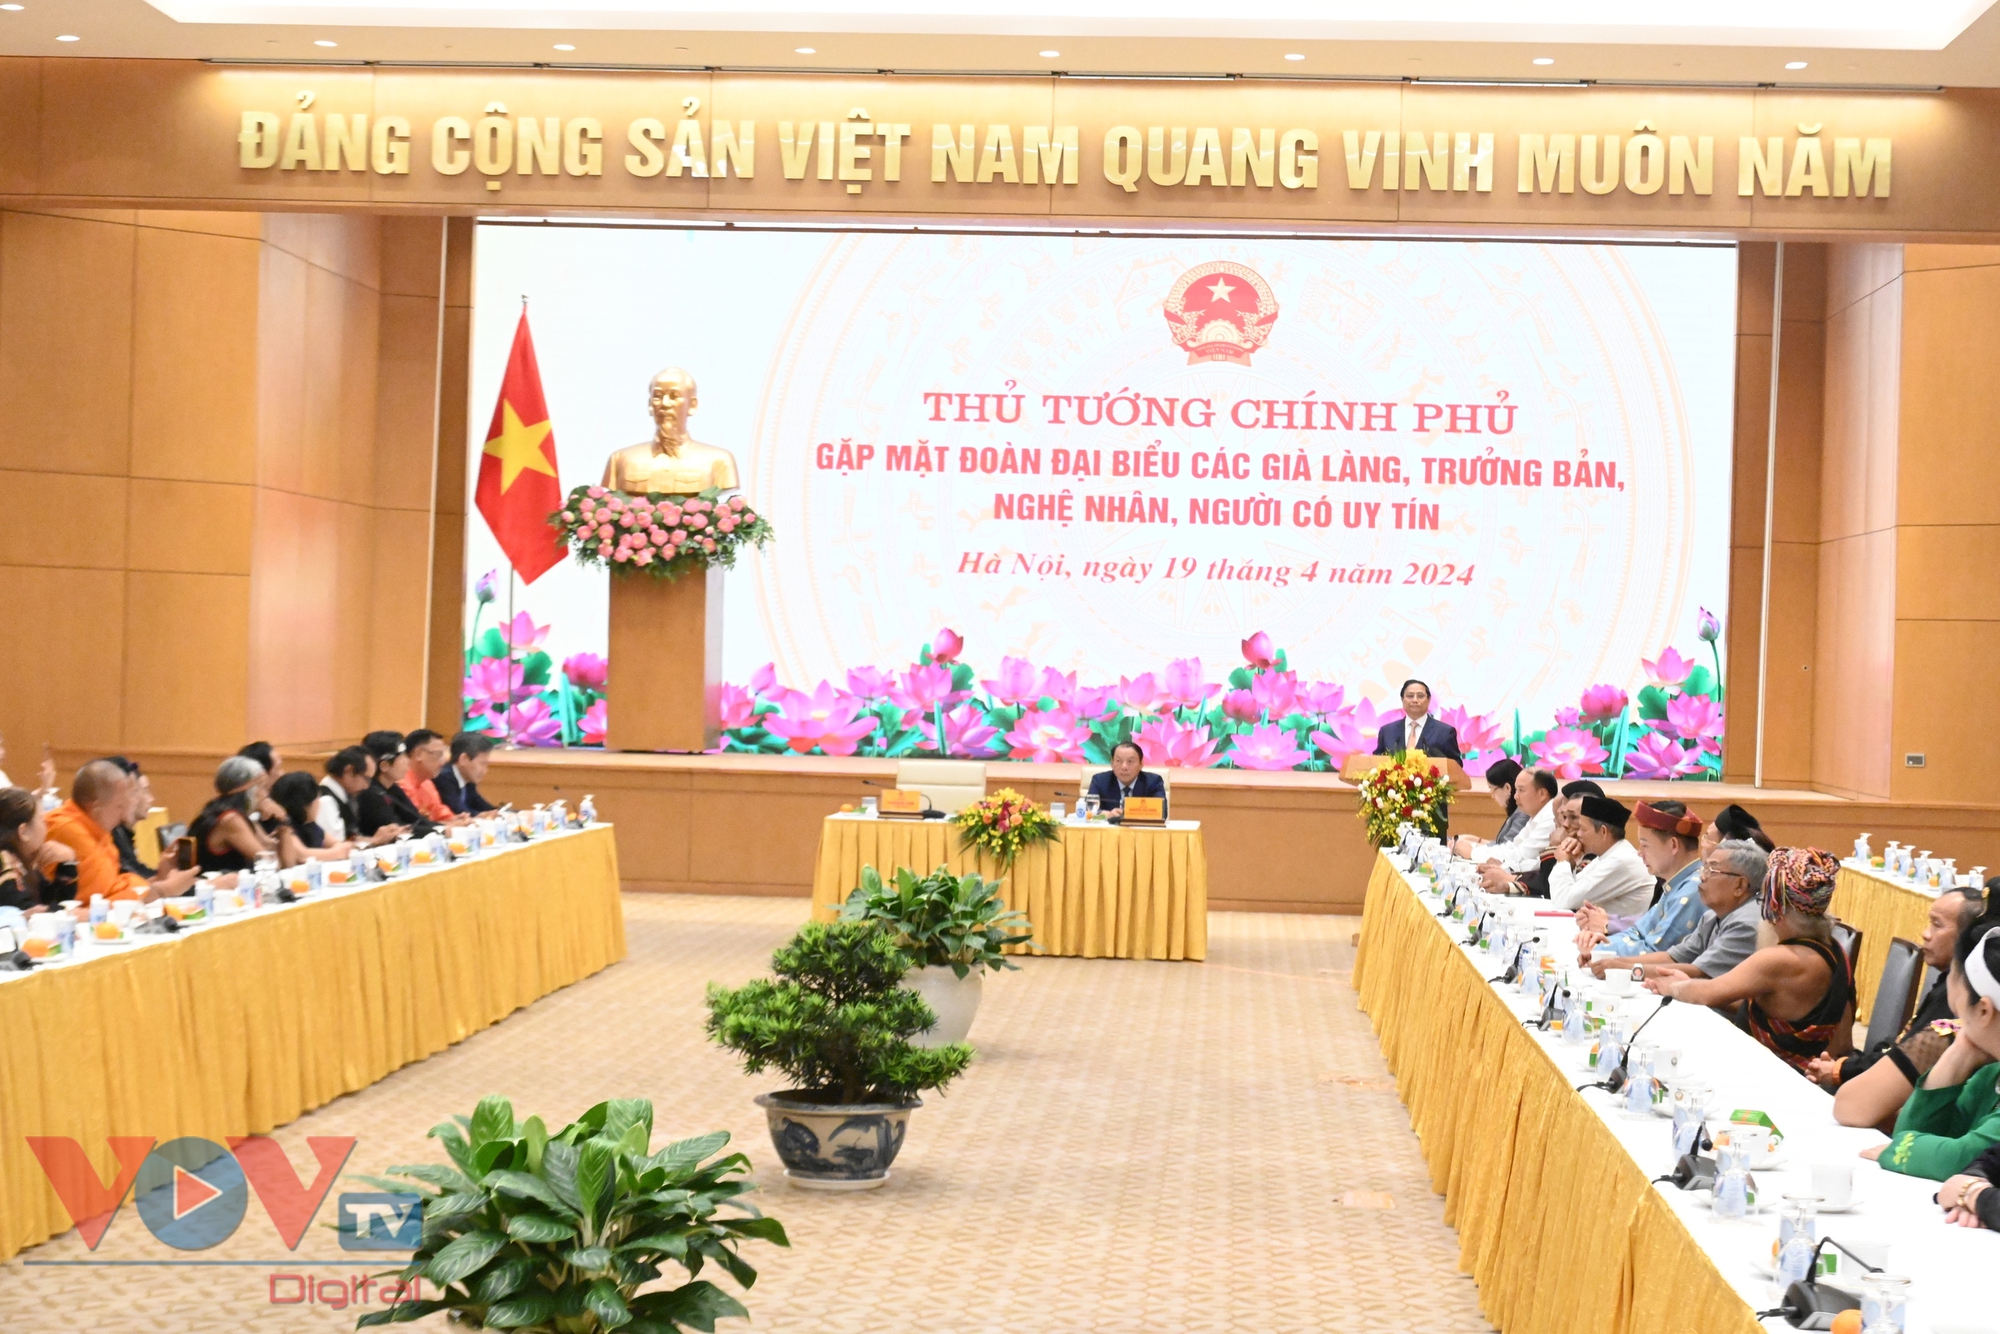 Thủ tướng Phạm Minh Chính gặp mặt già làng, trưởng bản, nghệ nhân, người có uy tín nhân- Ảnh 1.